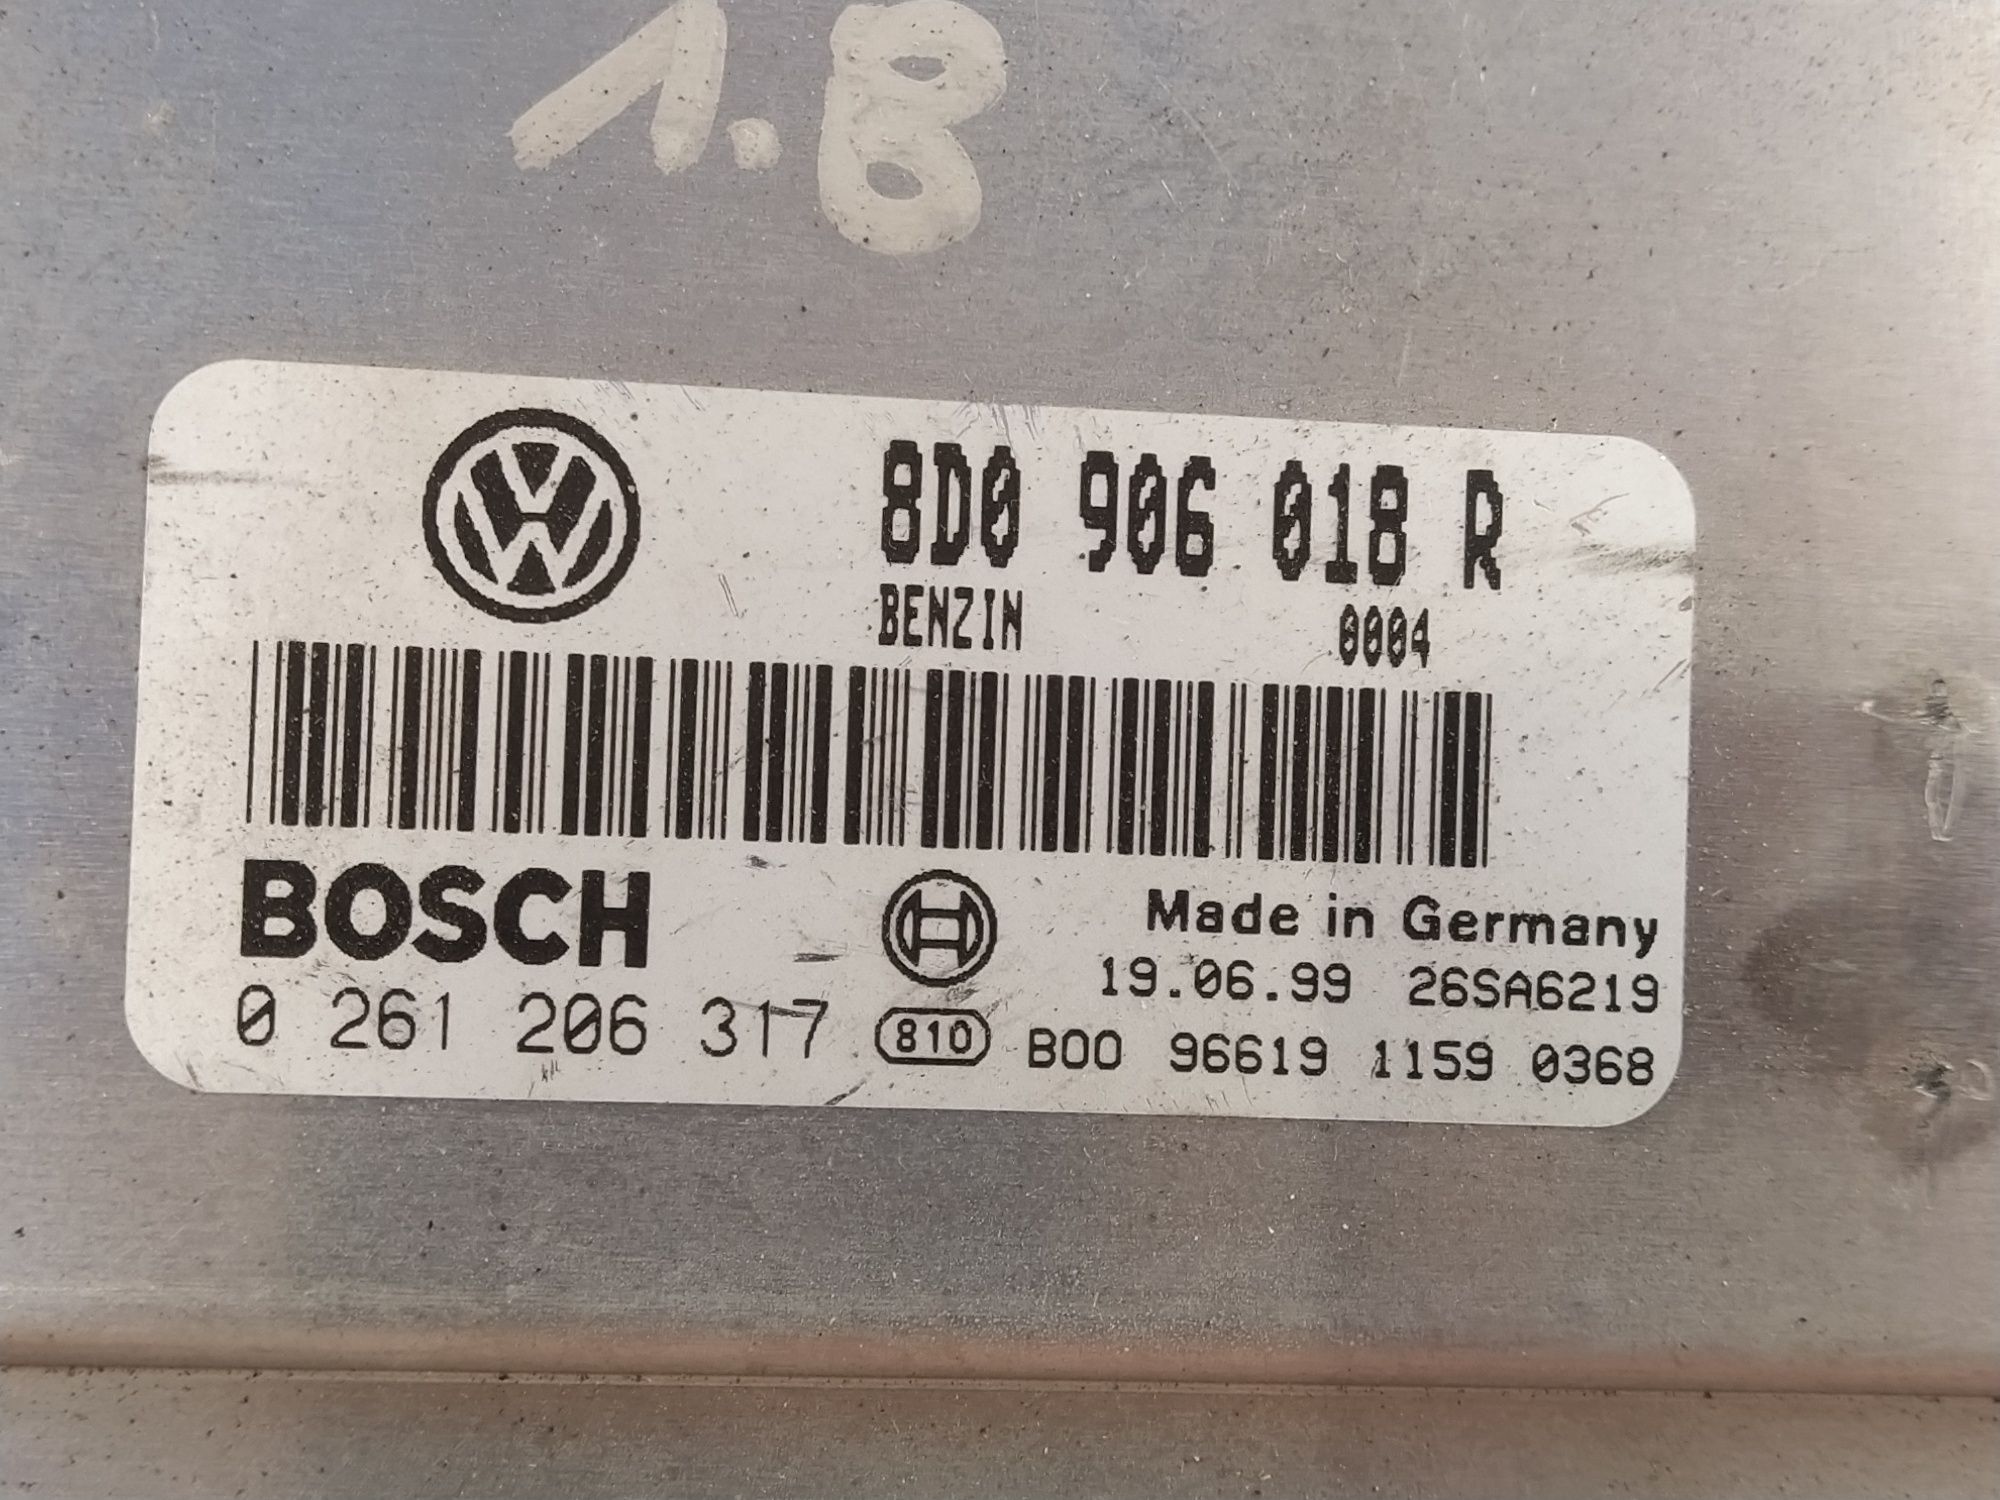 Volkswagen Passat B5 sterownik silnika 1,8 i